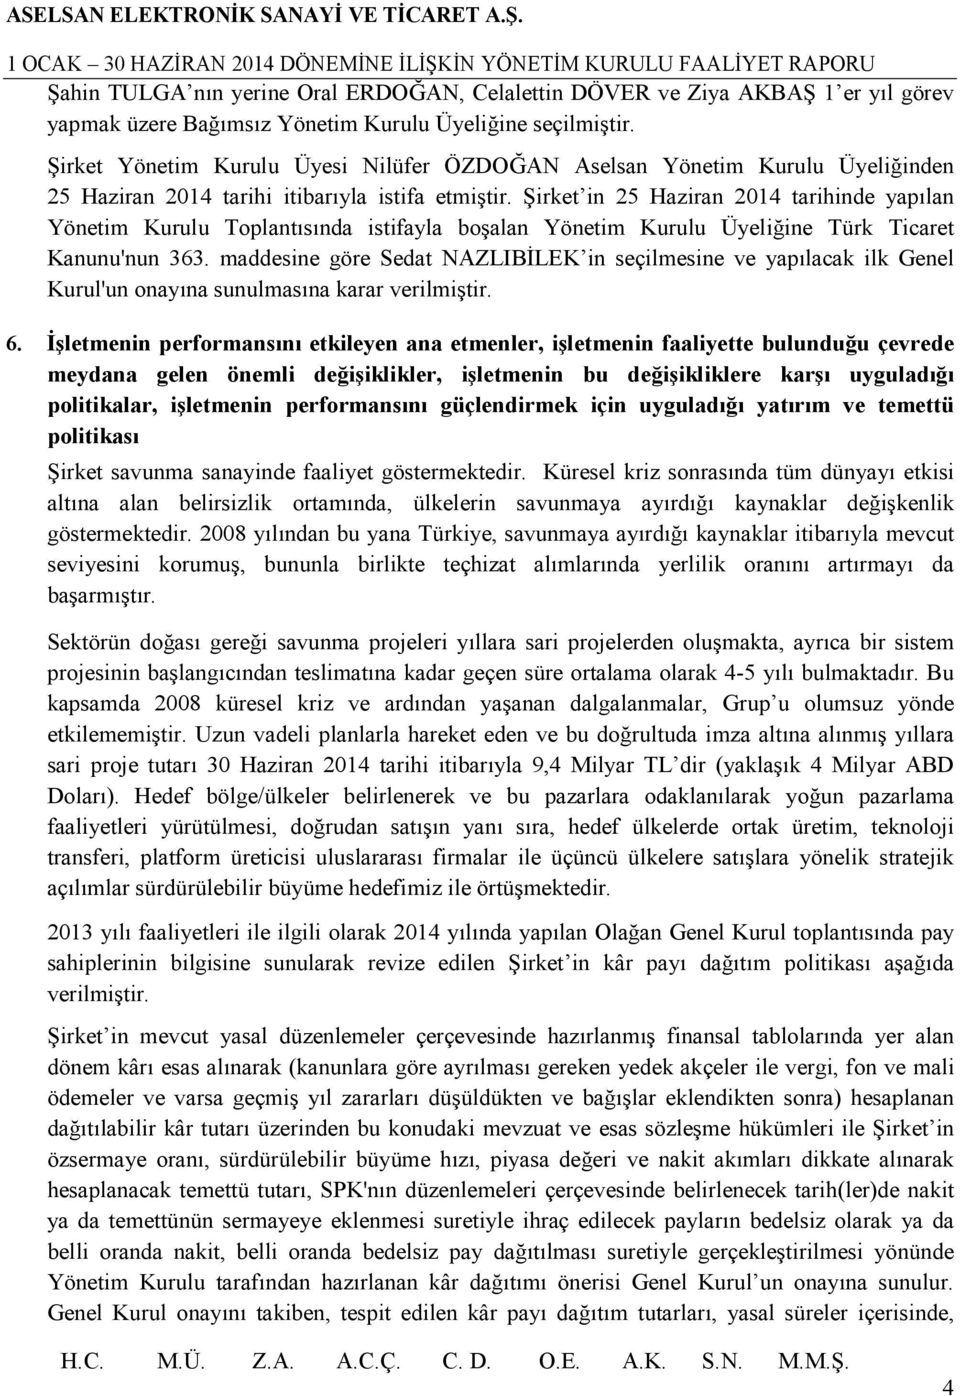 Şirket in 25 Haziran 2014 tarihinde yapılan Yönetim Kurulu Toplantısında istifayla boşalan Yönetim Kurulu Üyeliğine Türk Ticaret Kanunu'nun 363.